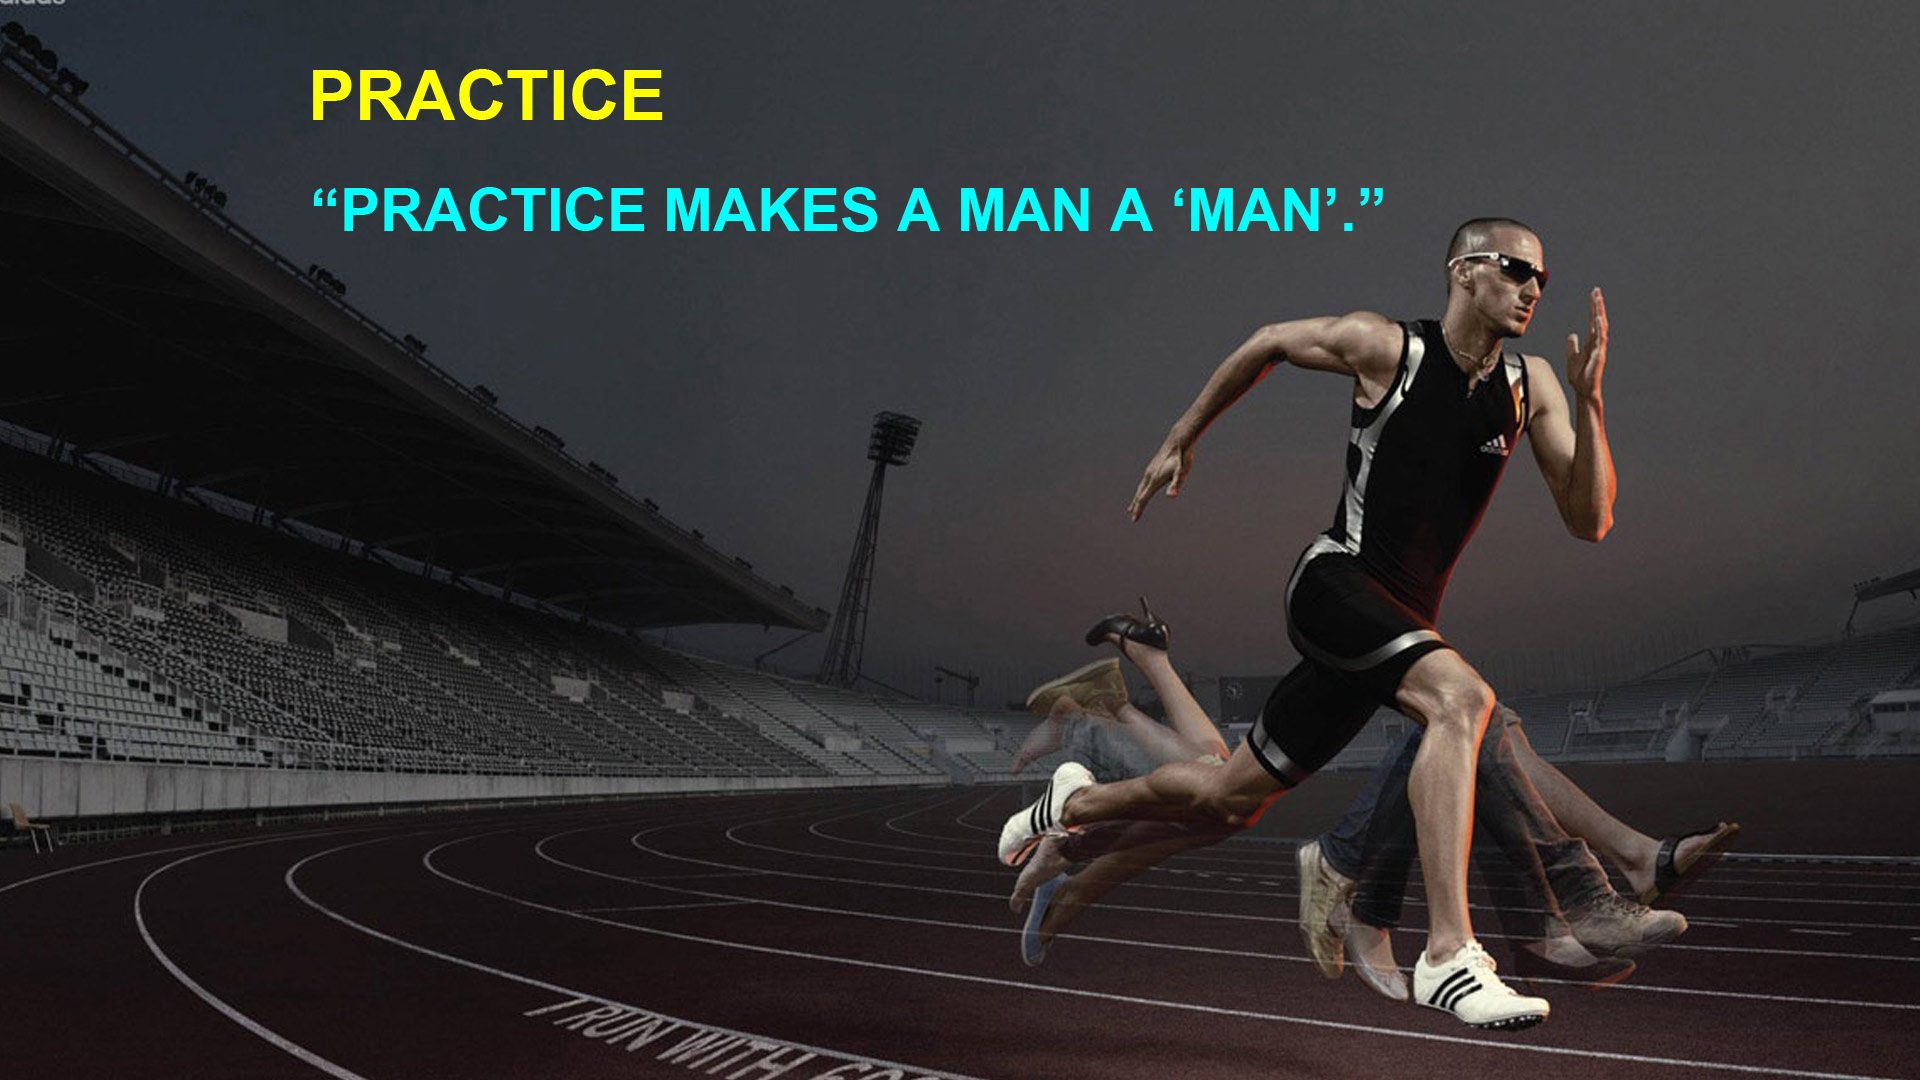 Practice makes a man a man